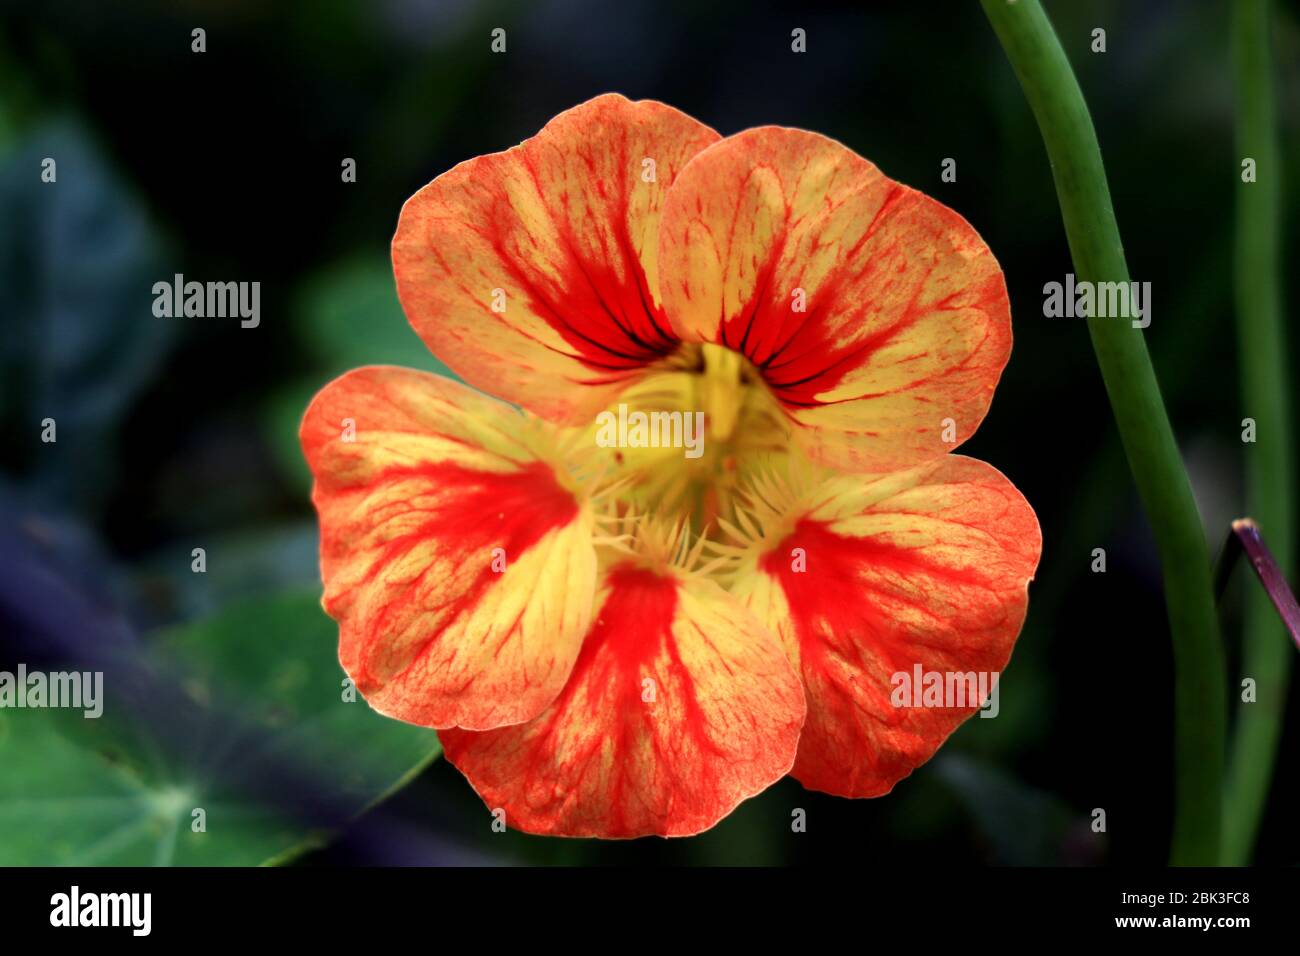 Fleurs de nasturtium. Tropaeolum majus jardin nastrutium, cresson indien, ou cresson des moines est une espèce de plantes fleuries dans la famille des Tropaeolaceae. Banque D'Images